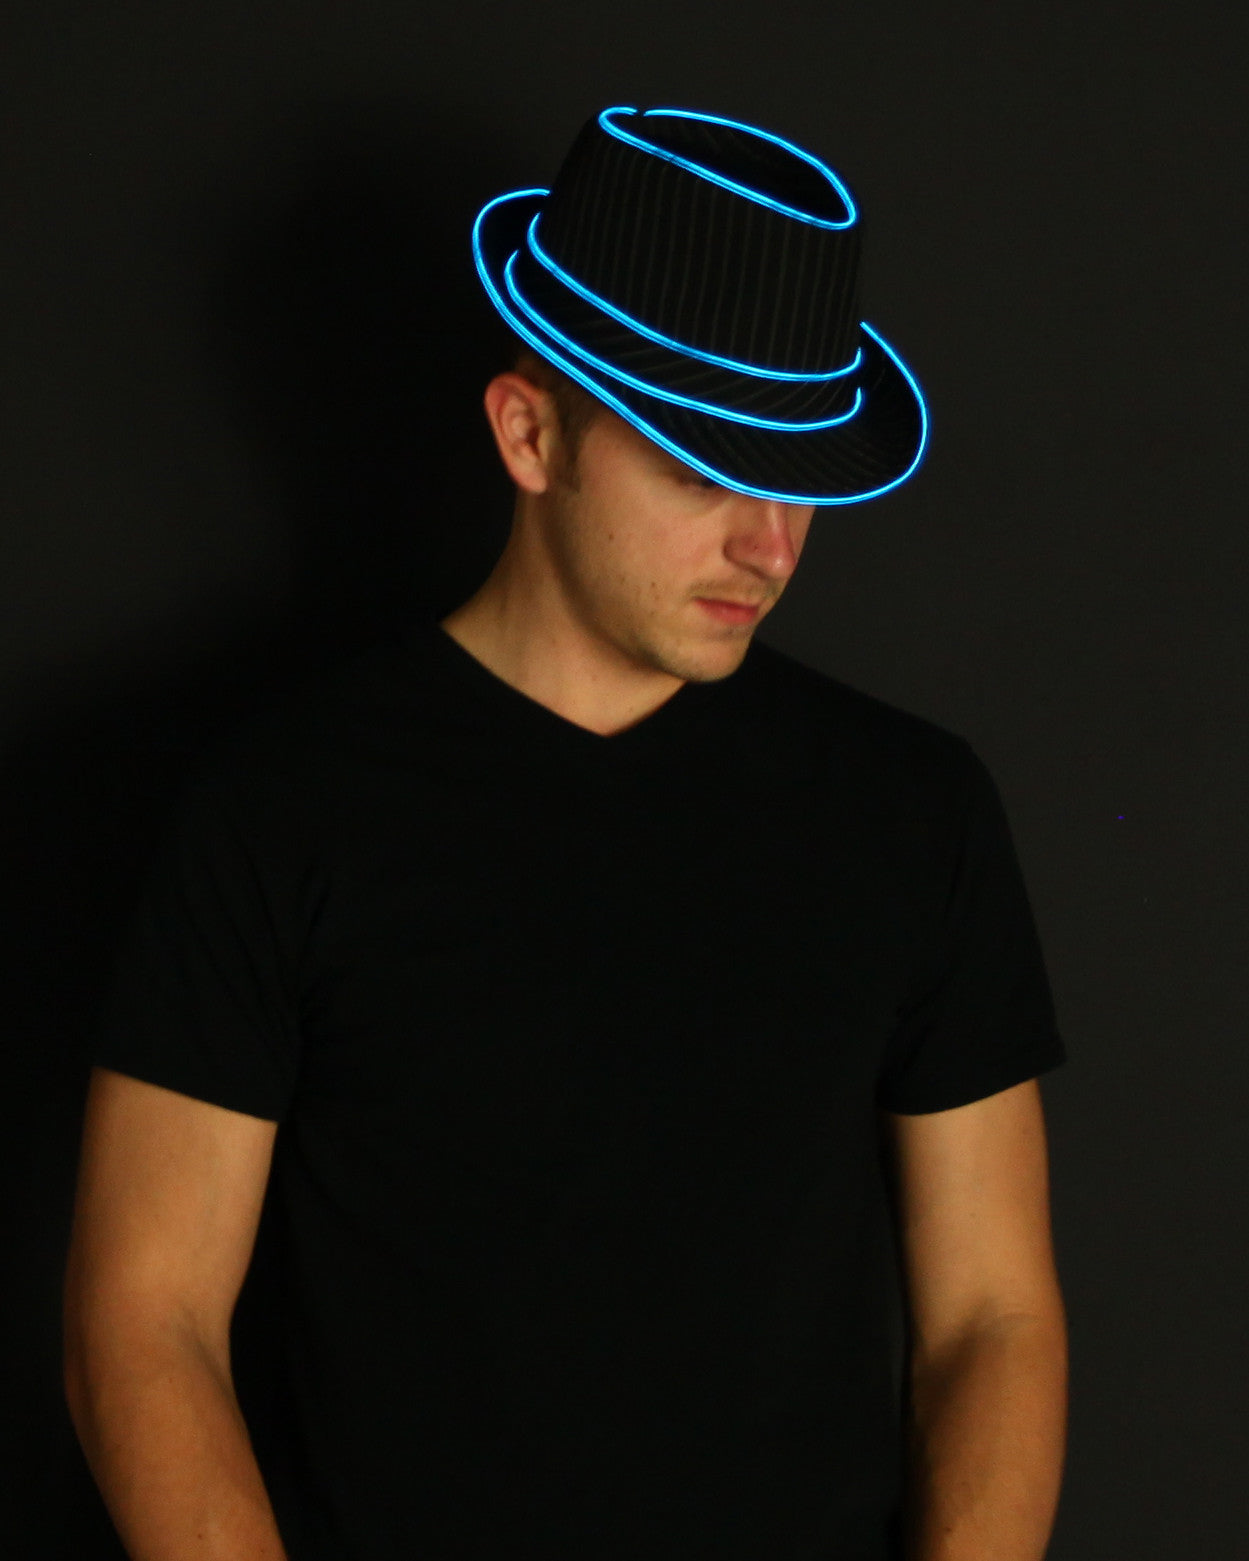 Light hat. Fedora. Неоновый мужчина в шляпе. Шляпа Федора певца. Одежда в стиле неон мужская.